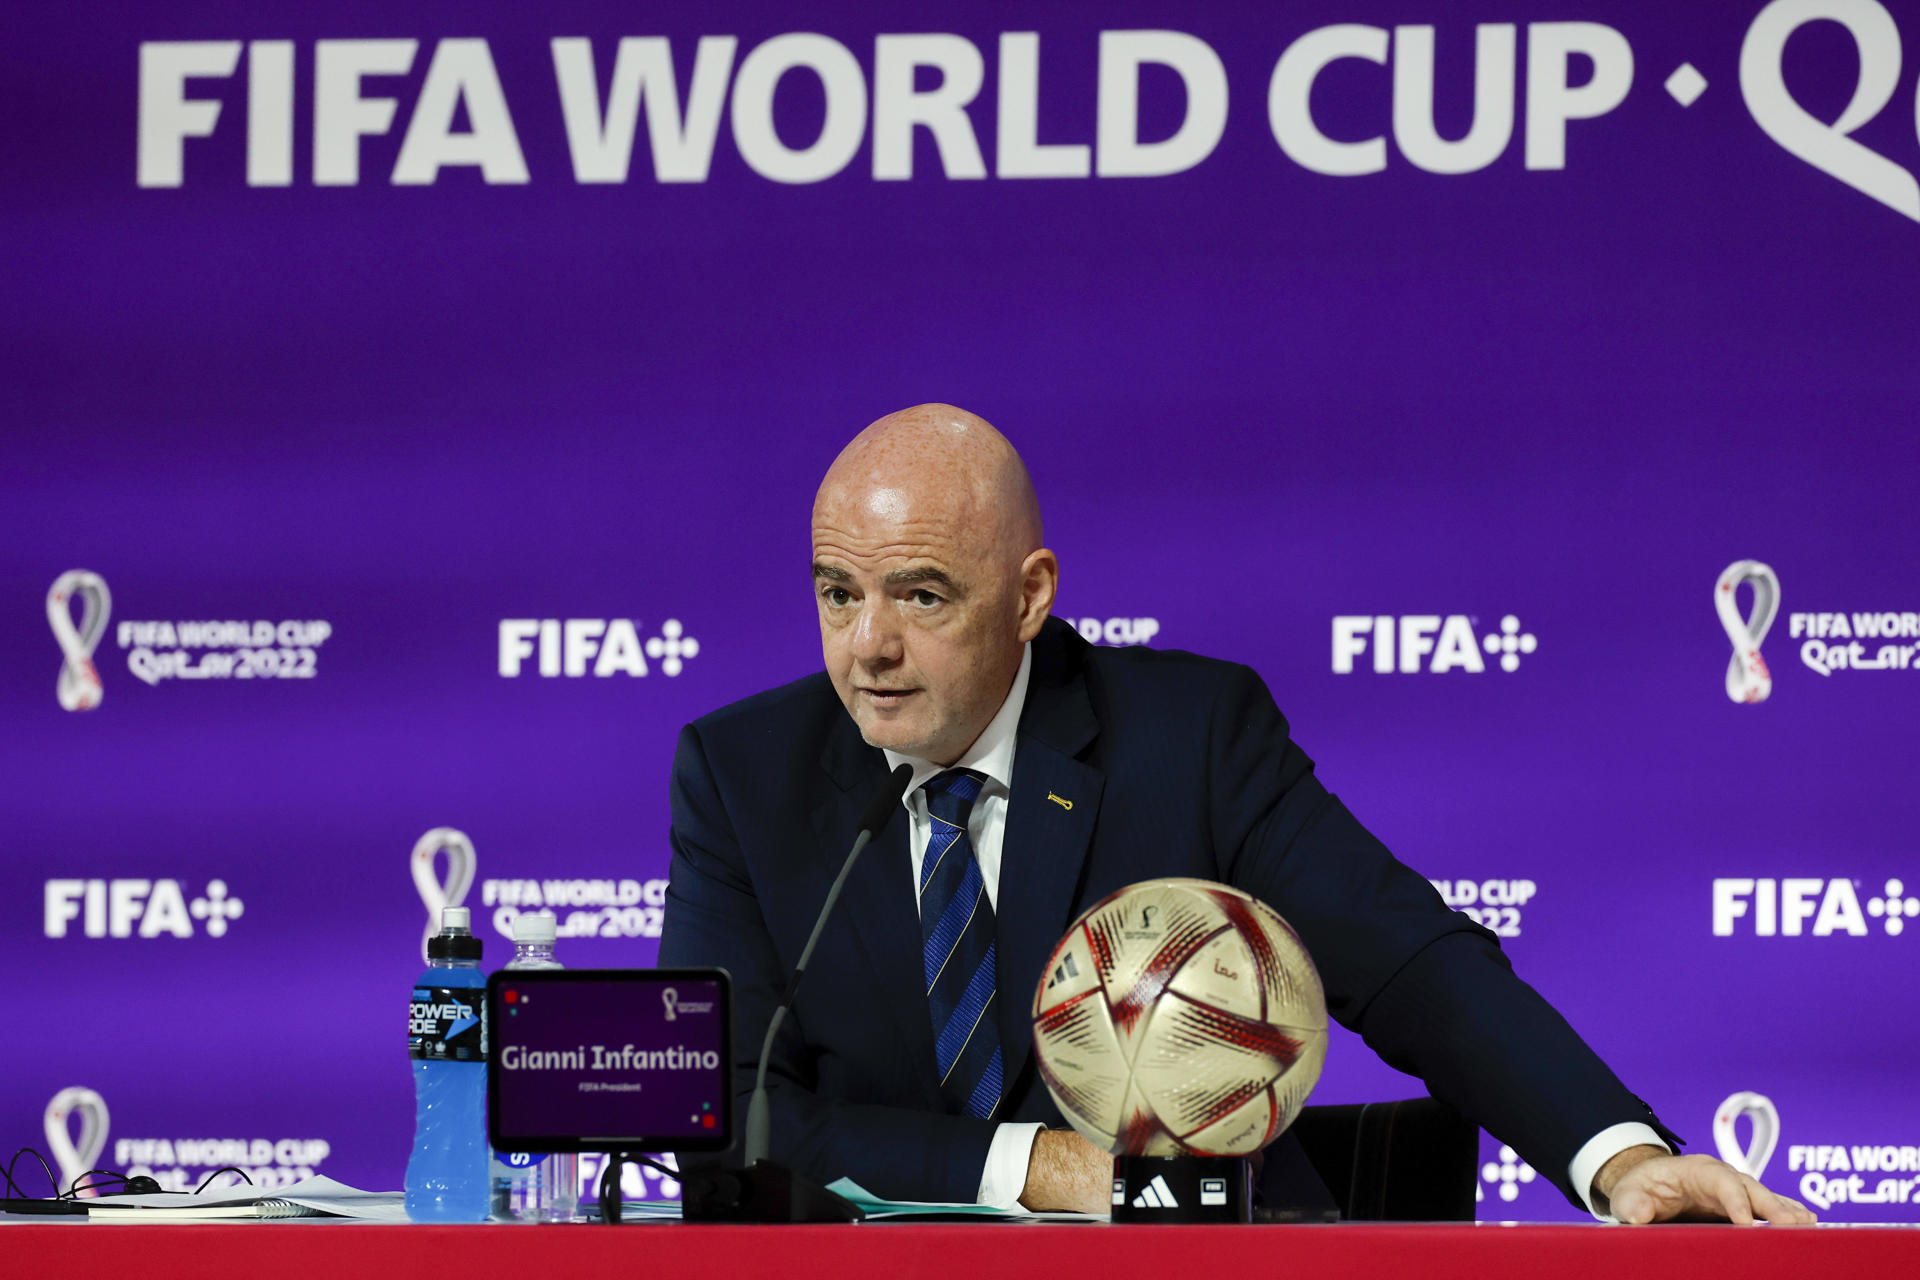 El suizo Gianni Infantino, presidente de la FIFA, anunció el nuevo formato del Mundial de Clubes. Foto: EFE.